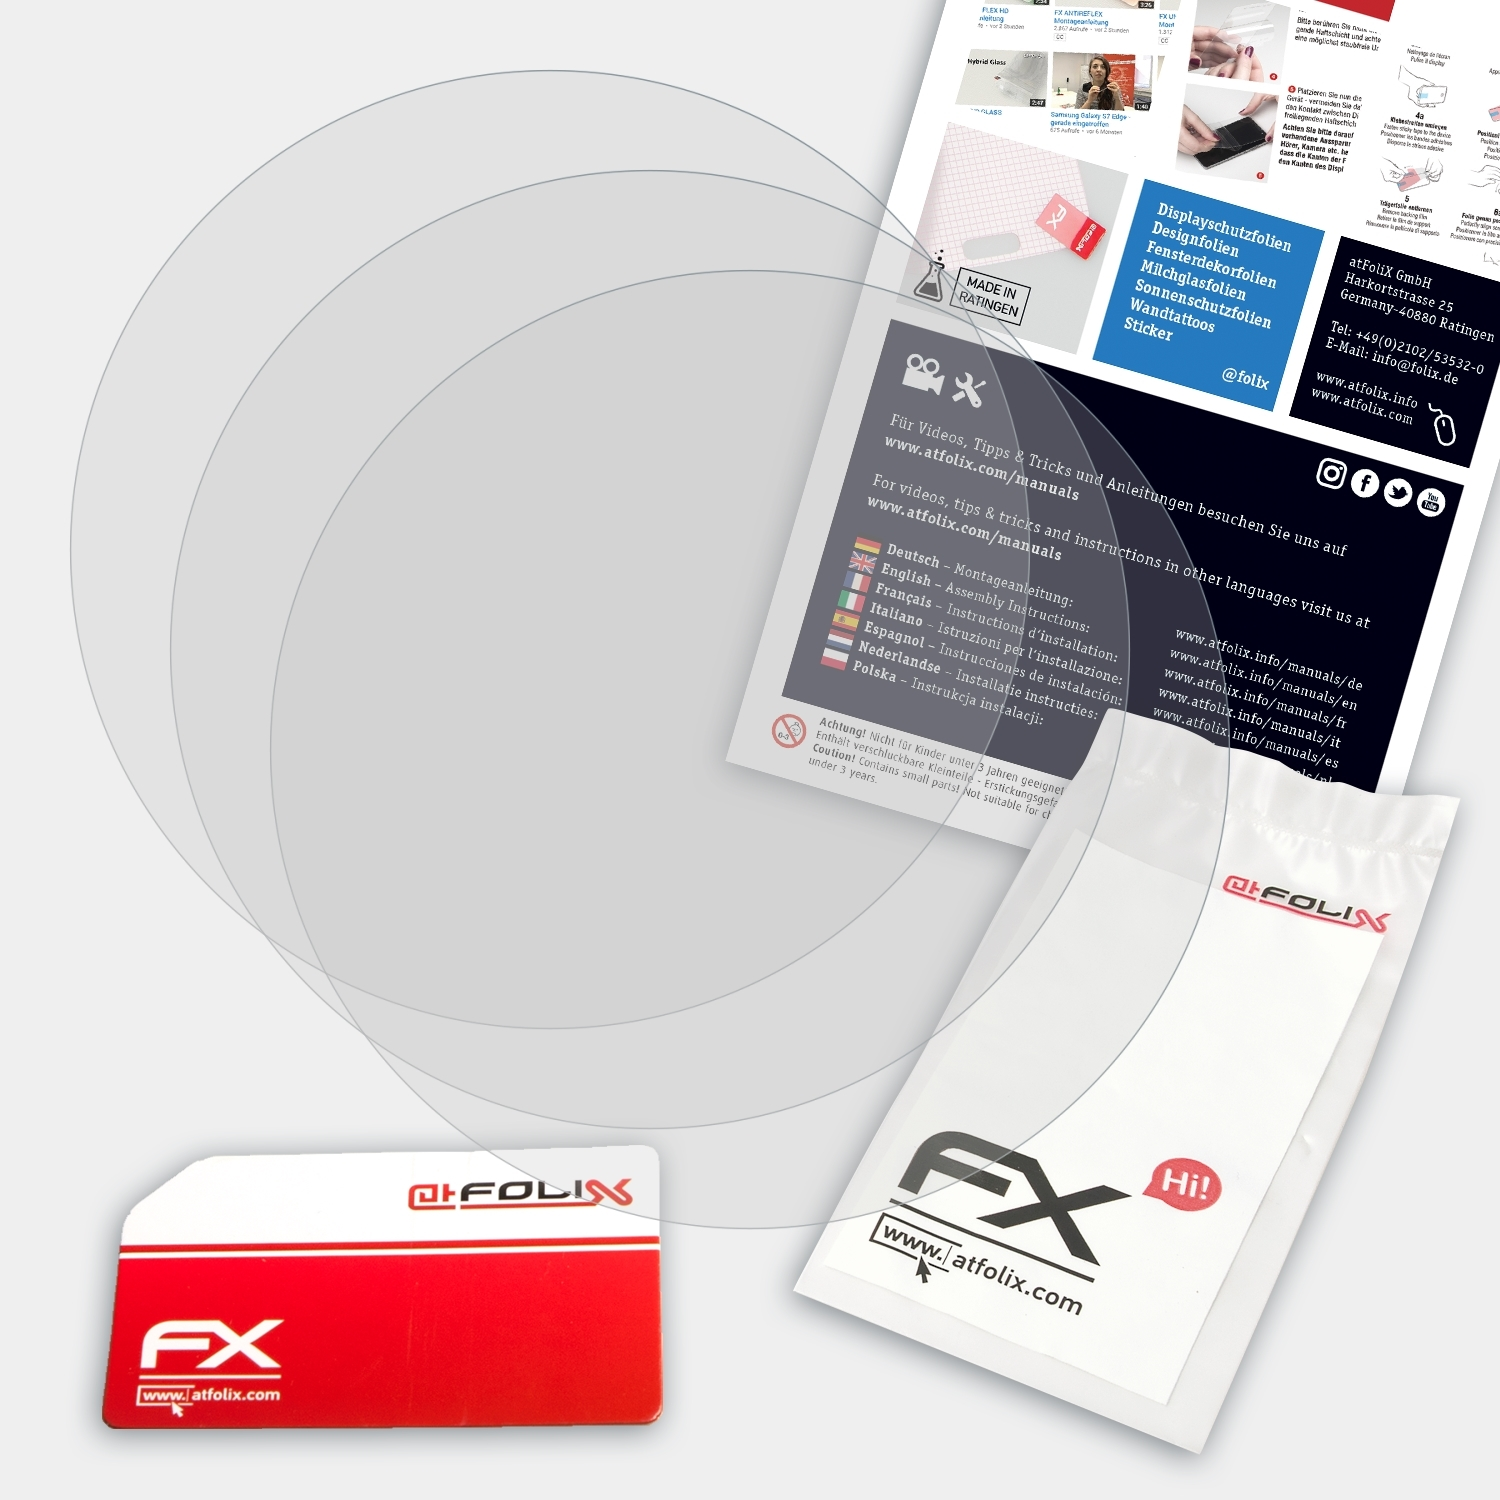 FX-Antireflex 3x Casio Displayschutz(für PRW-6100Y-1AER) ATFOLIX